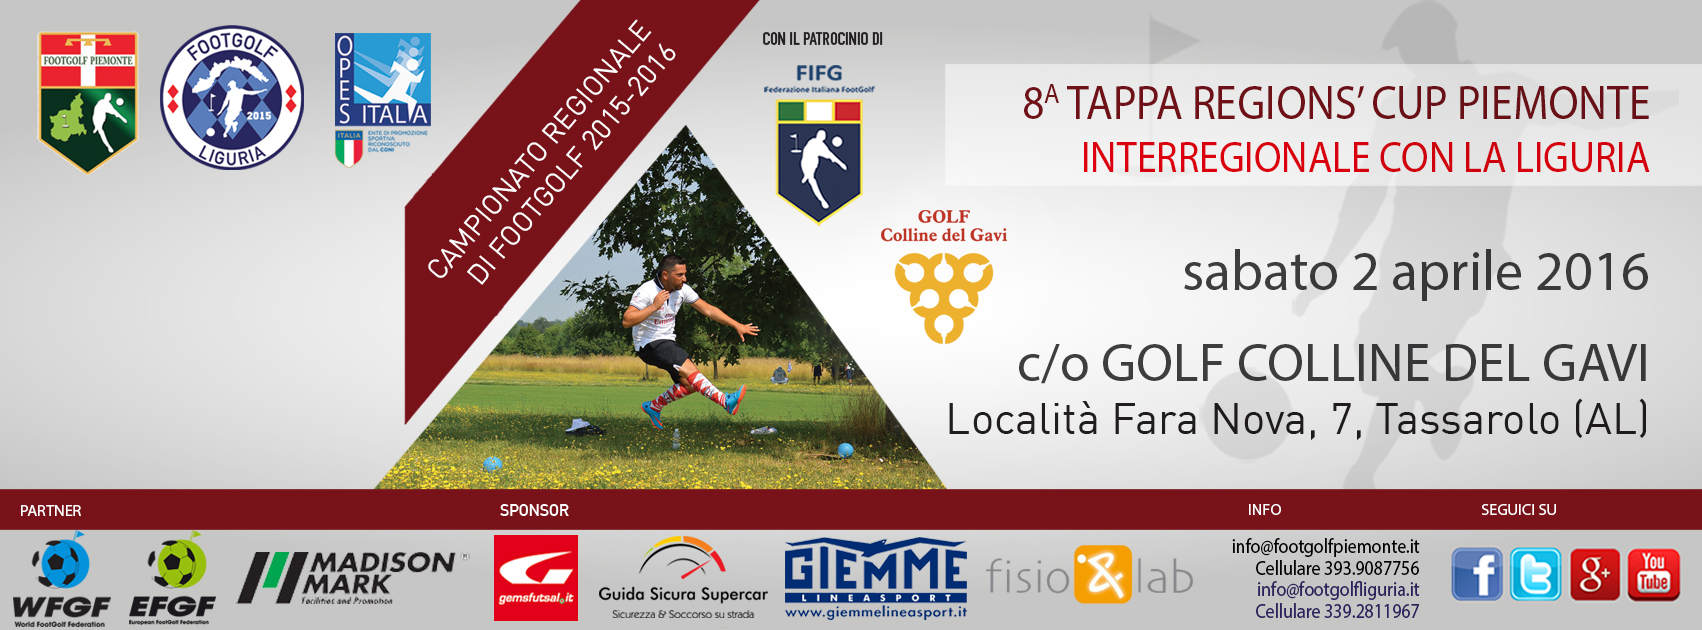 8 tappa Regions' Cup Footgolf Piemonte Tassarolo AL sabato 2 aprile 2016